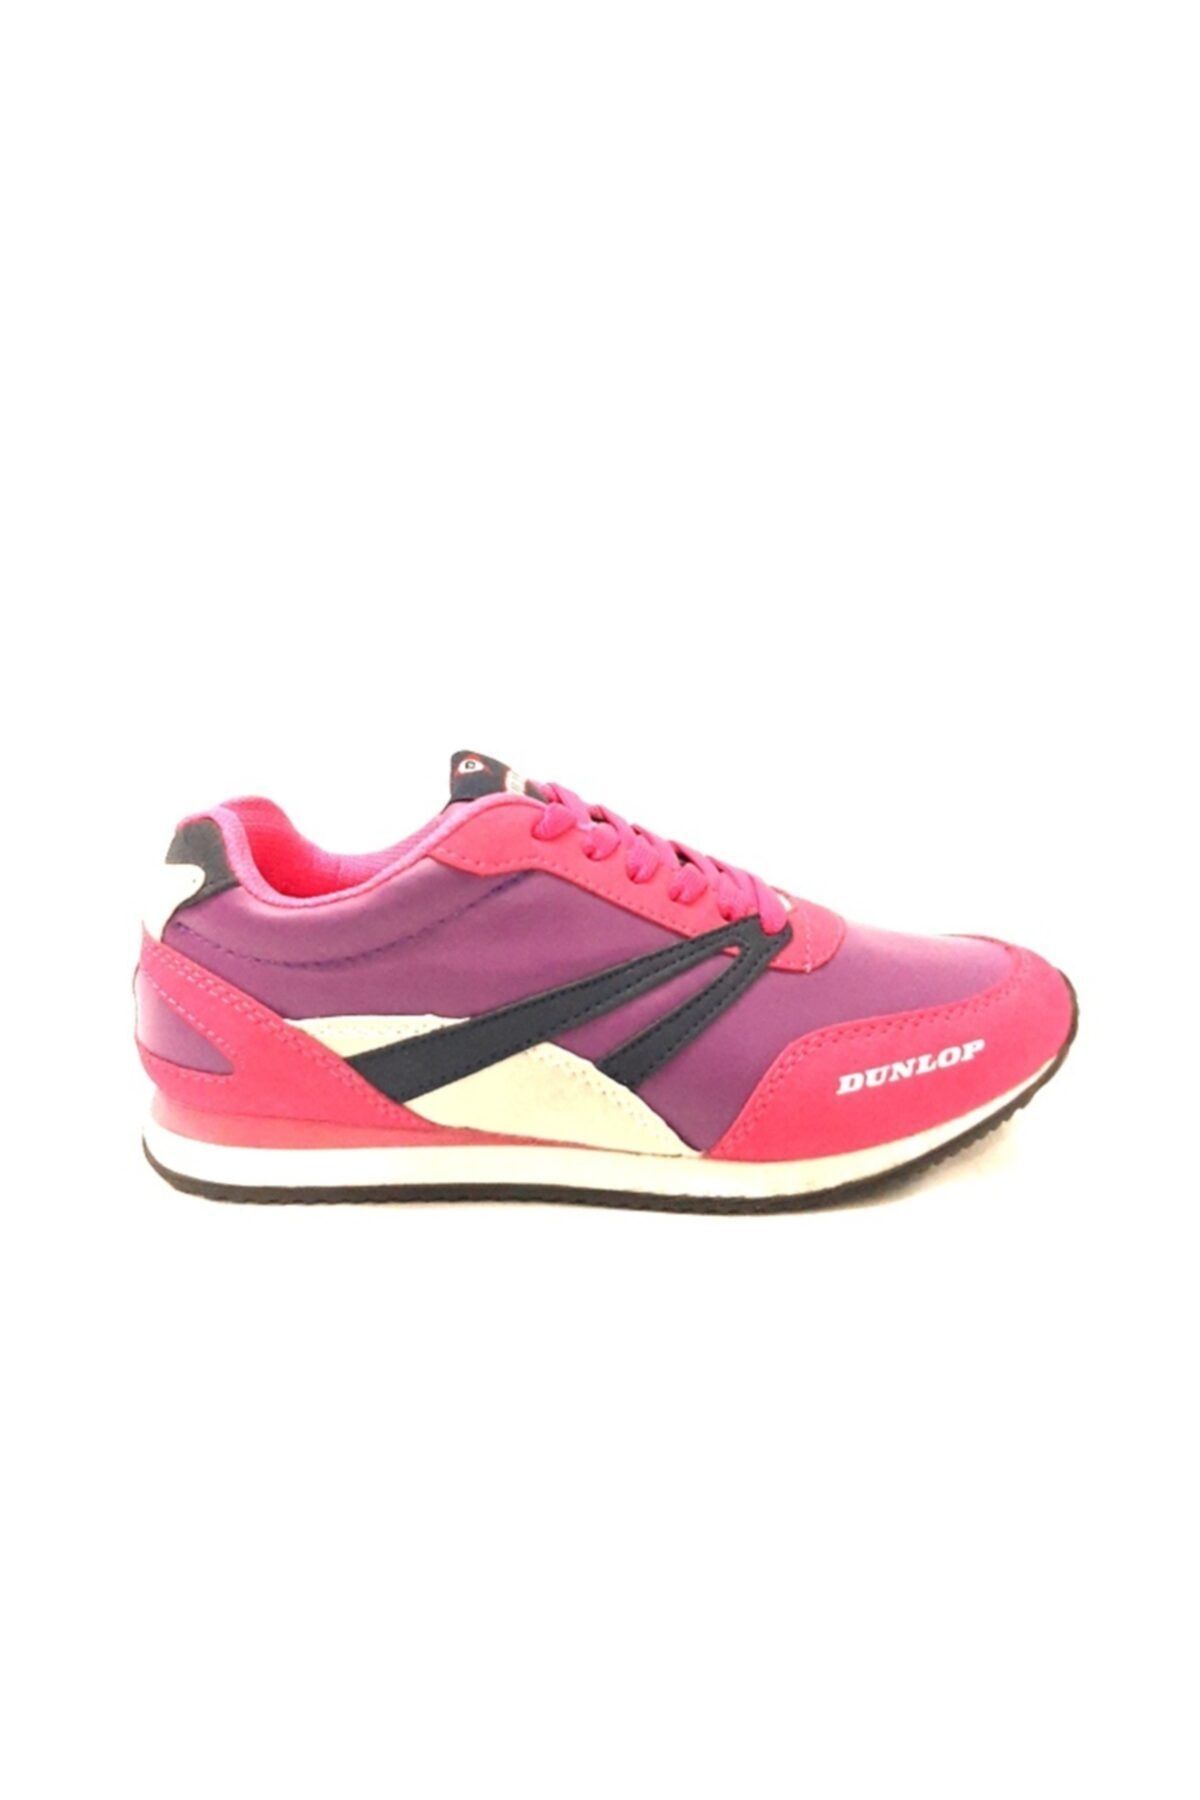 Dunlop Çoklu Renk Kadın Spor Ayakkabı